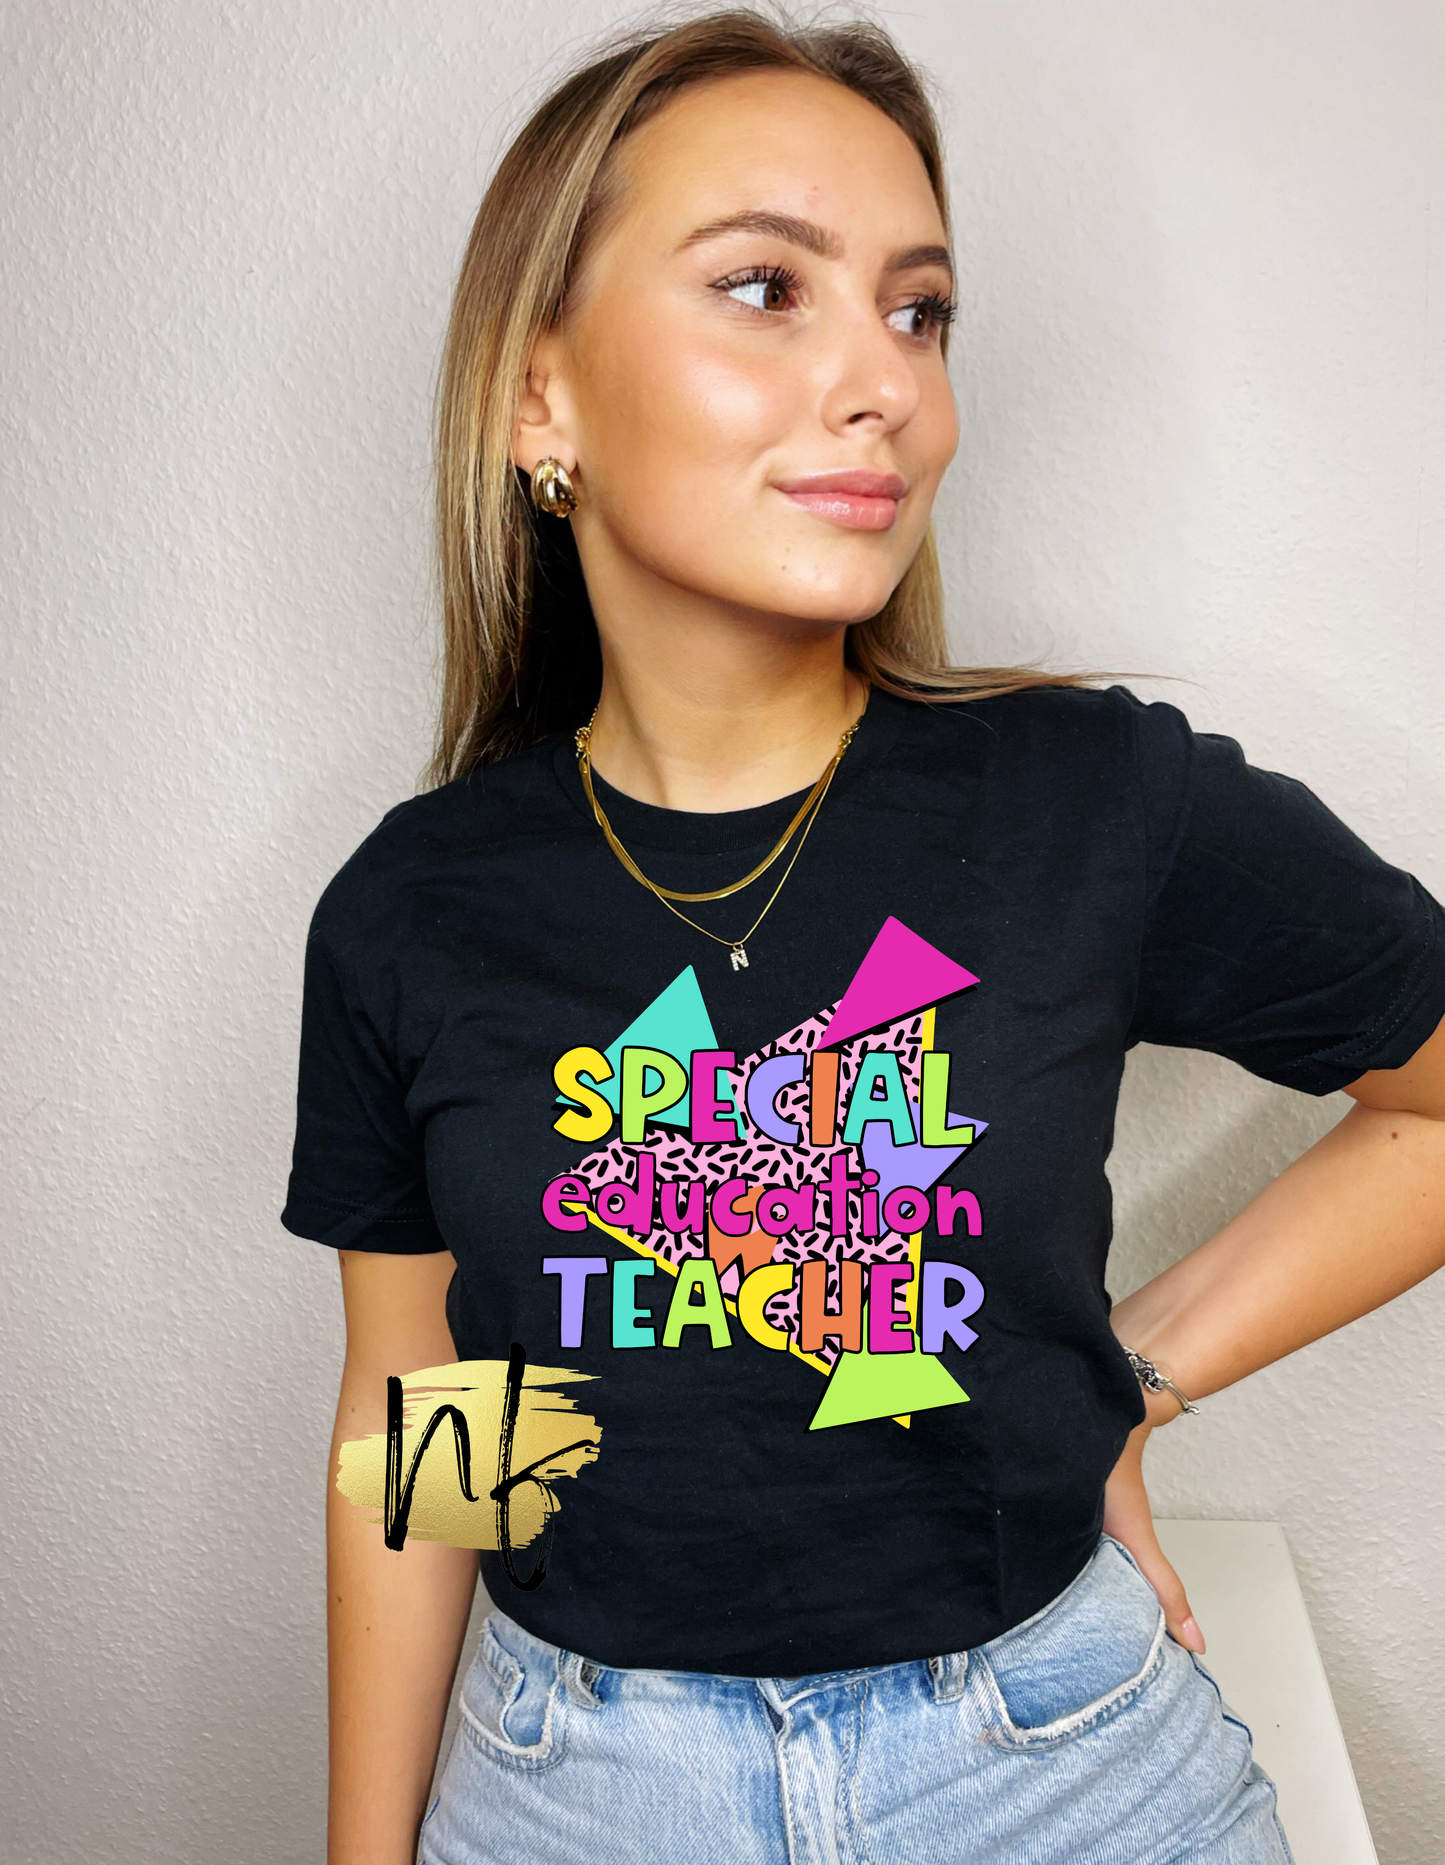 90s Themed Special Education Teacher